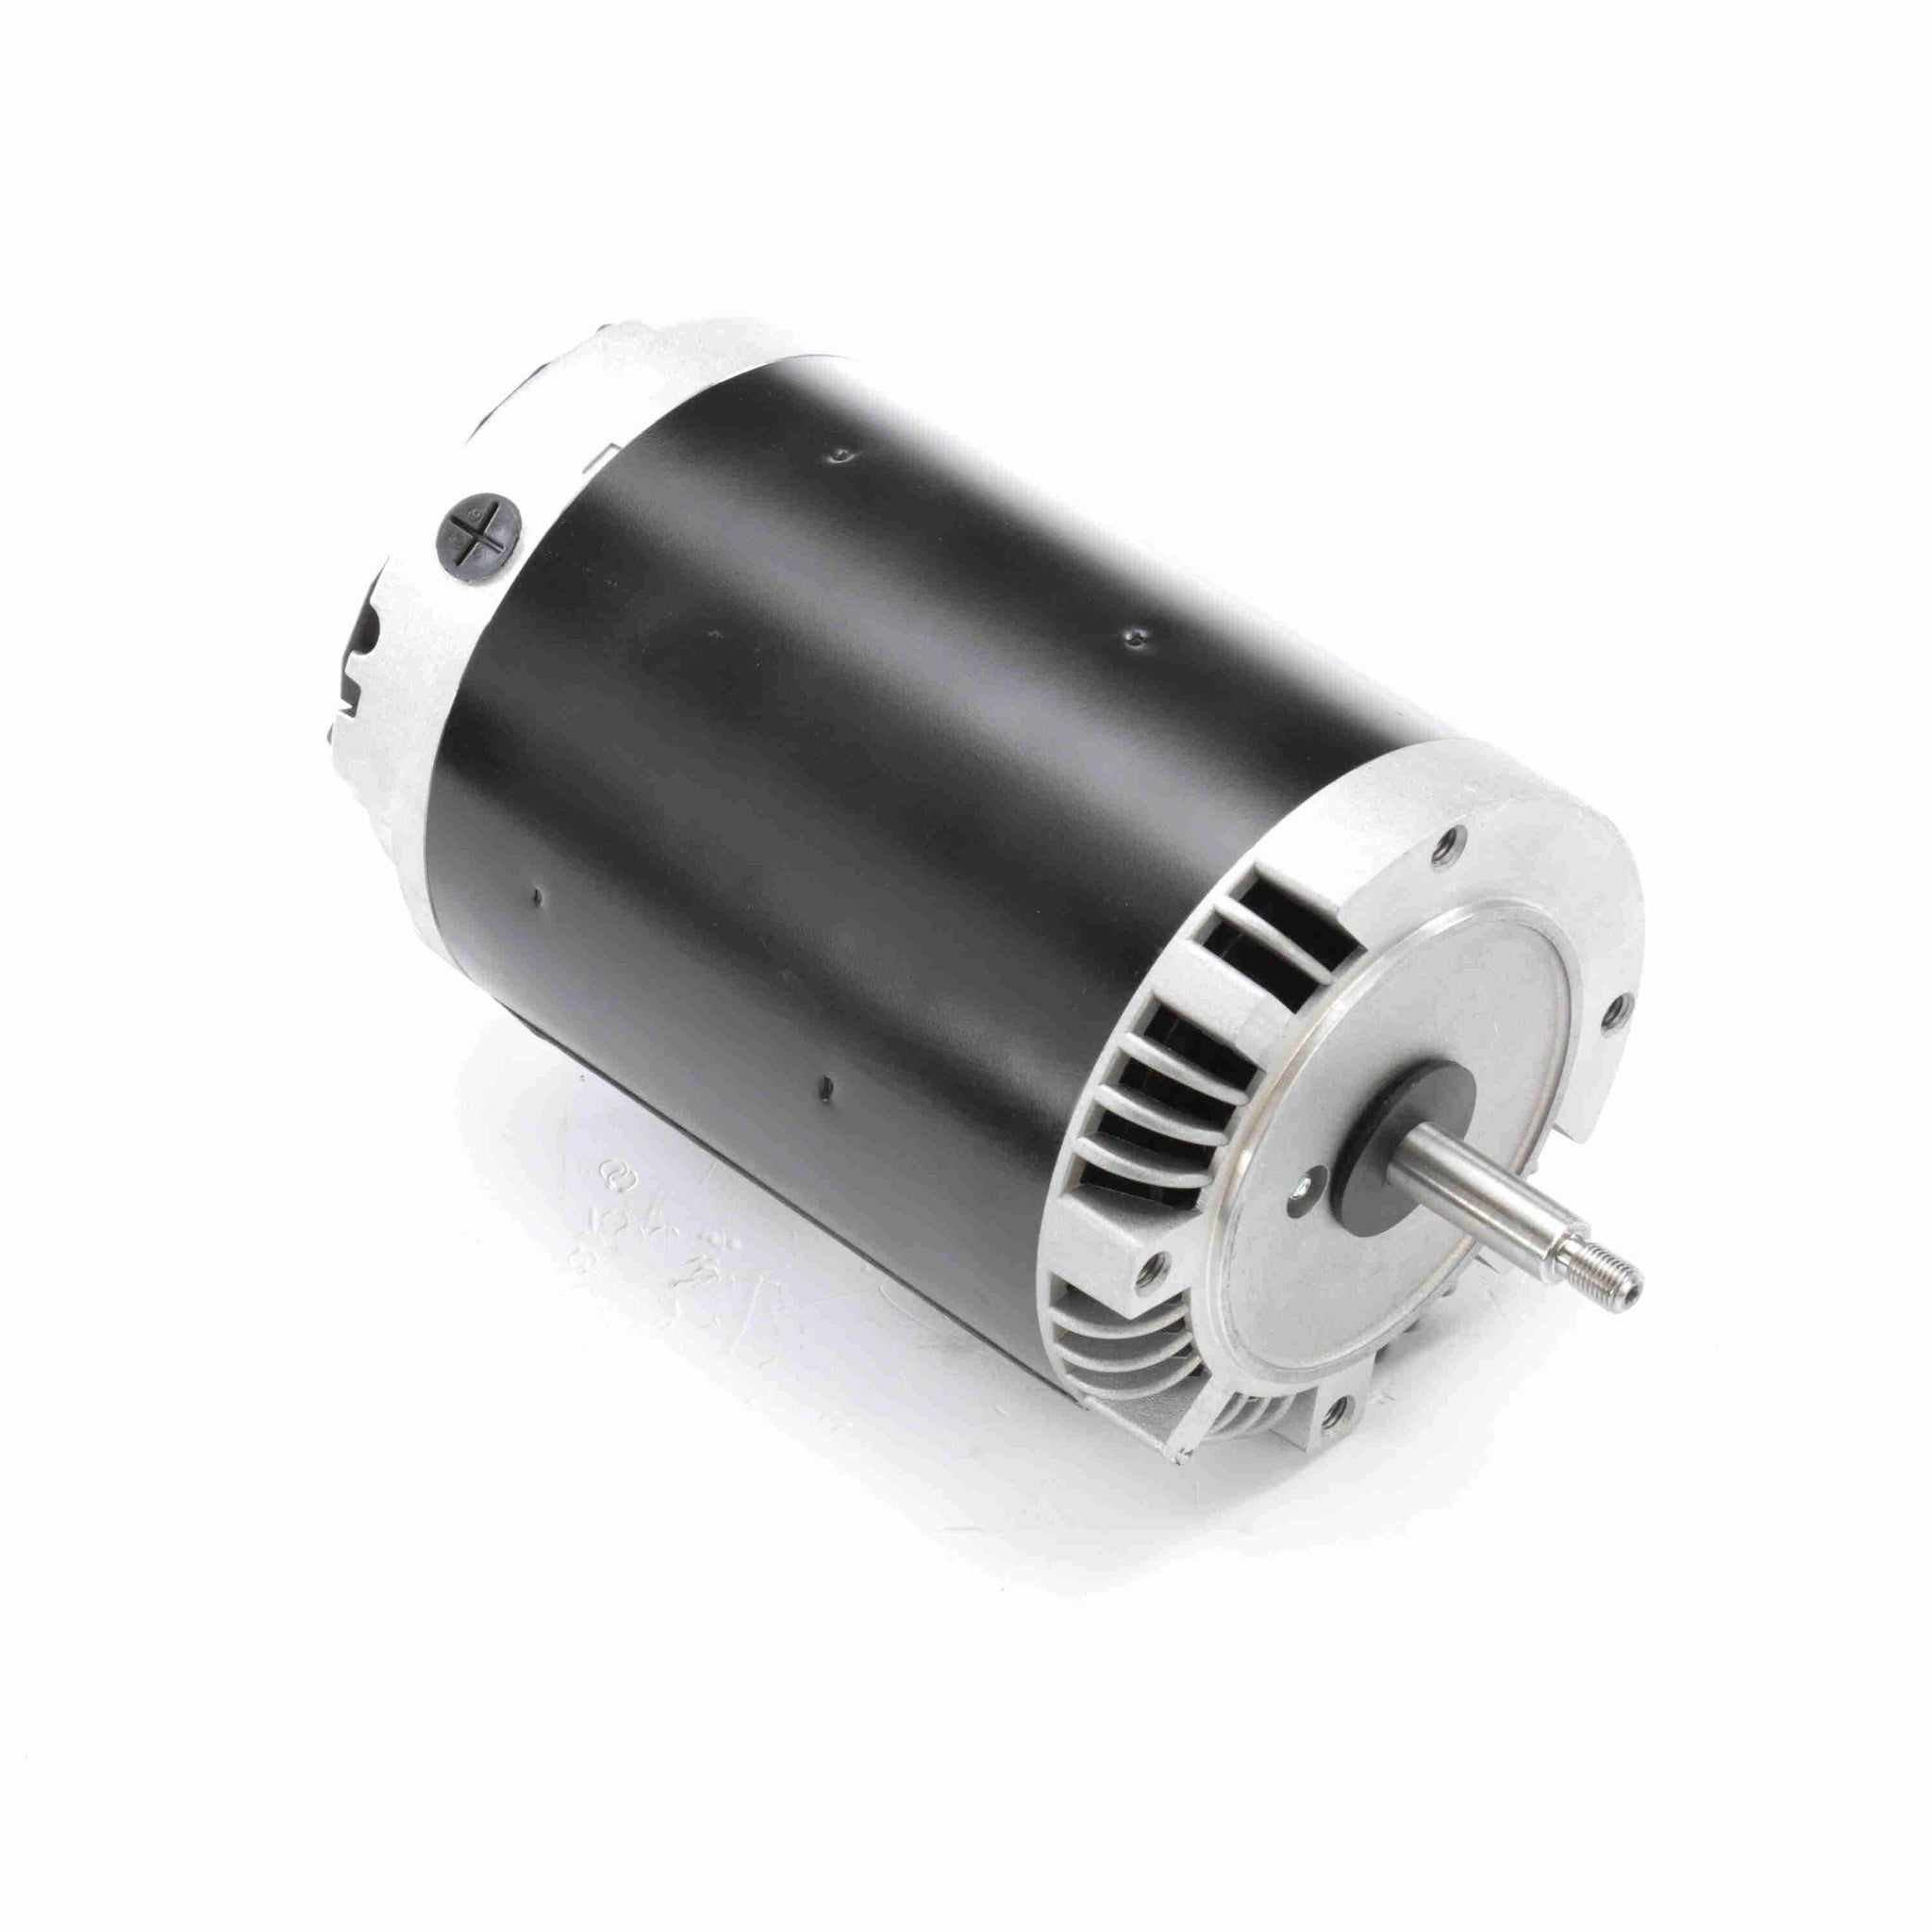 H733 -  2.0 HP General Purpose Pump Motor, 3 phase, 3600 RPM, 200-230/460 V, 56J Frame, ODP - Hardware & Moreee